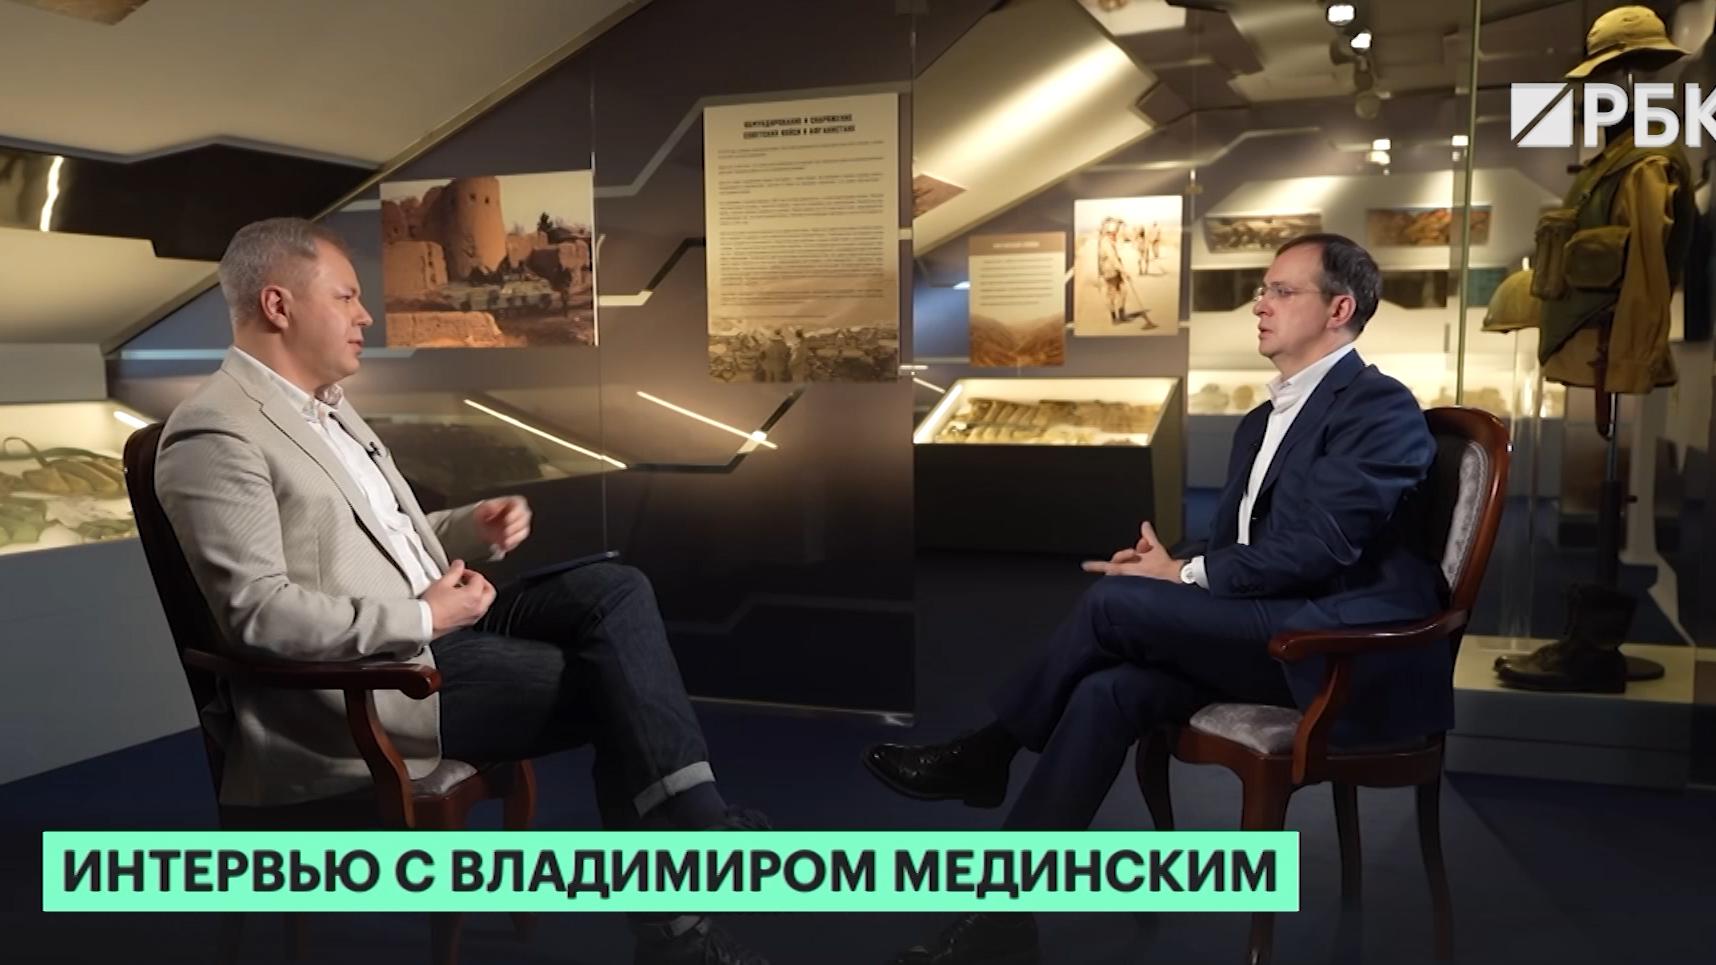 Мединский объяснил включение военной операции в учебник по истории России